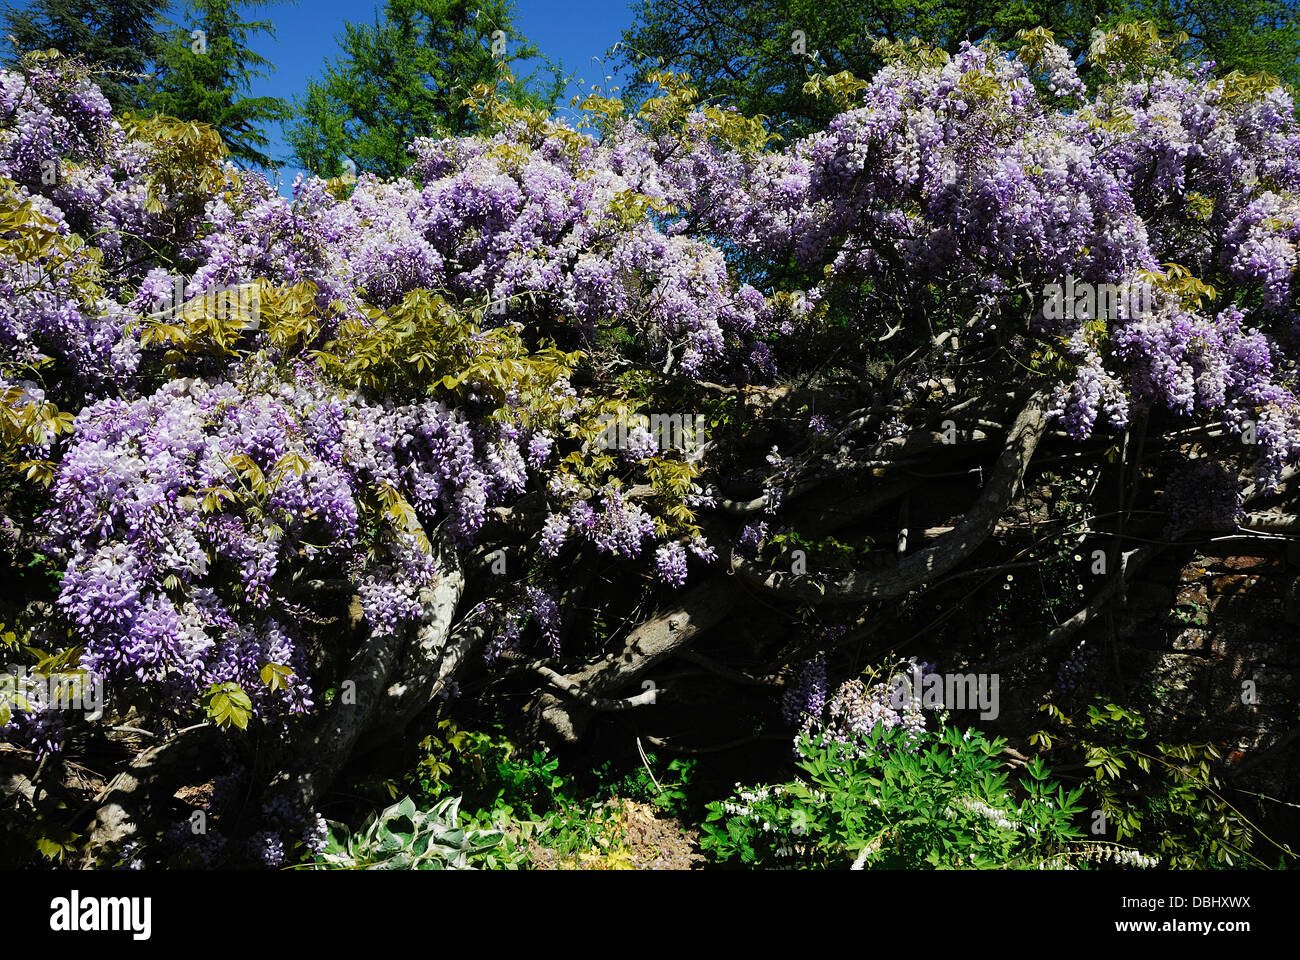 wisteria climbing shrub garden Stock Photo